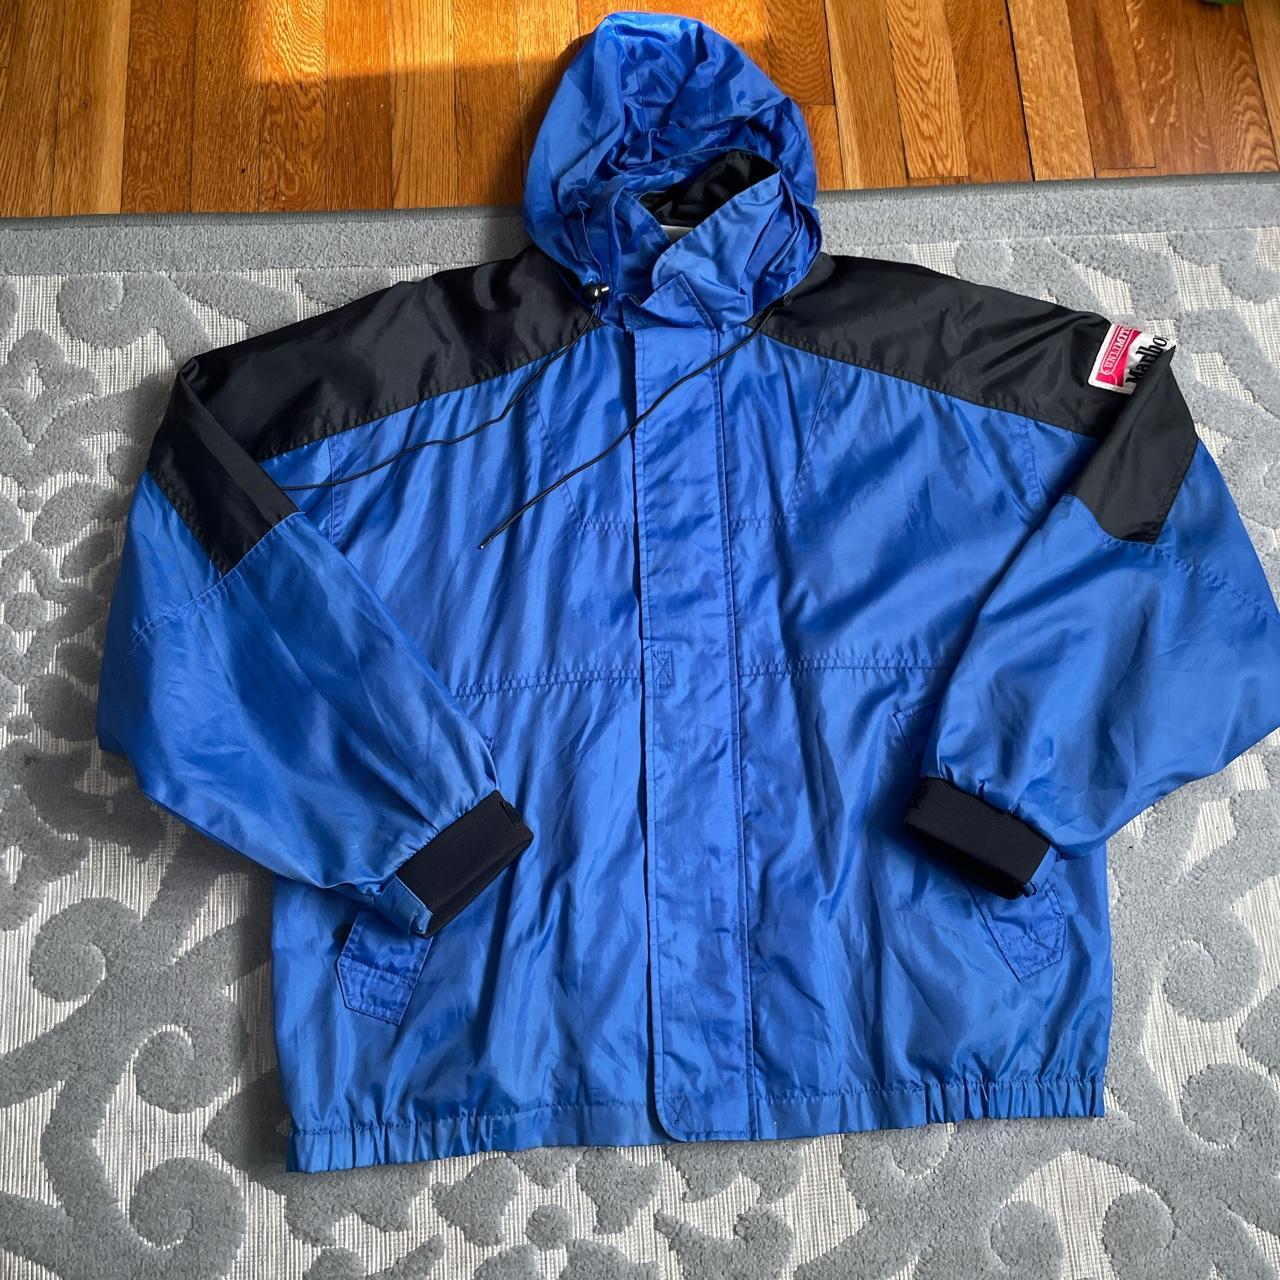 Vintage 90’s Marlboro rain 🌧️ jacket in great... - Depop